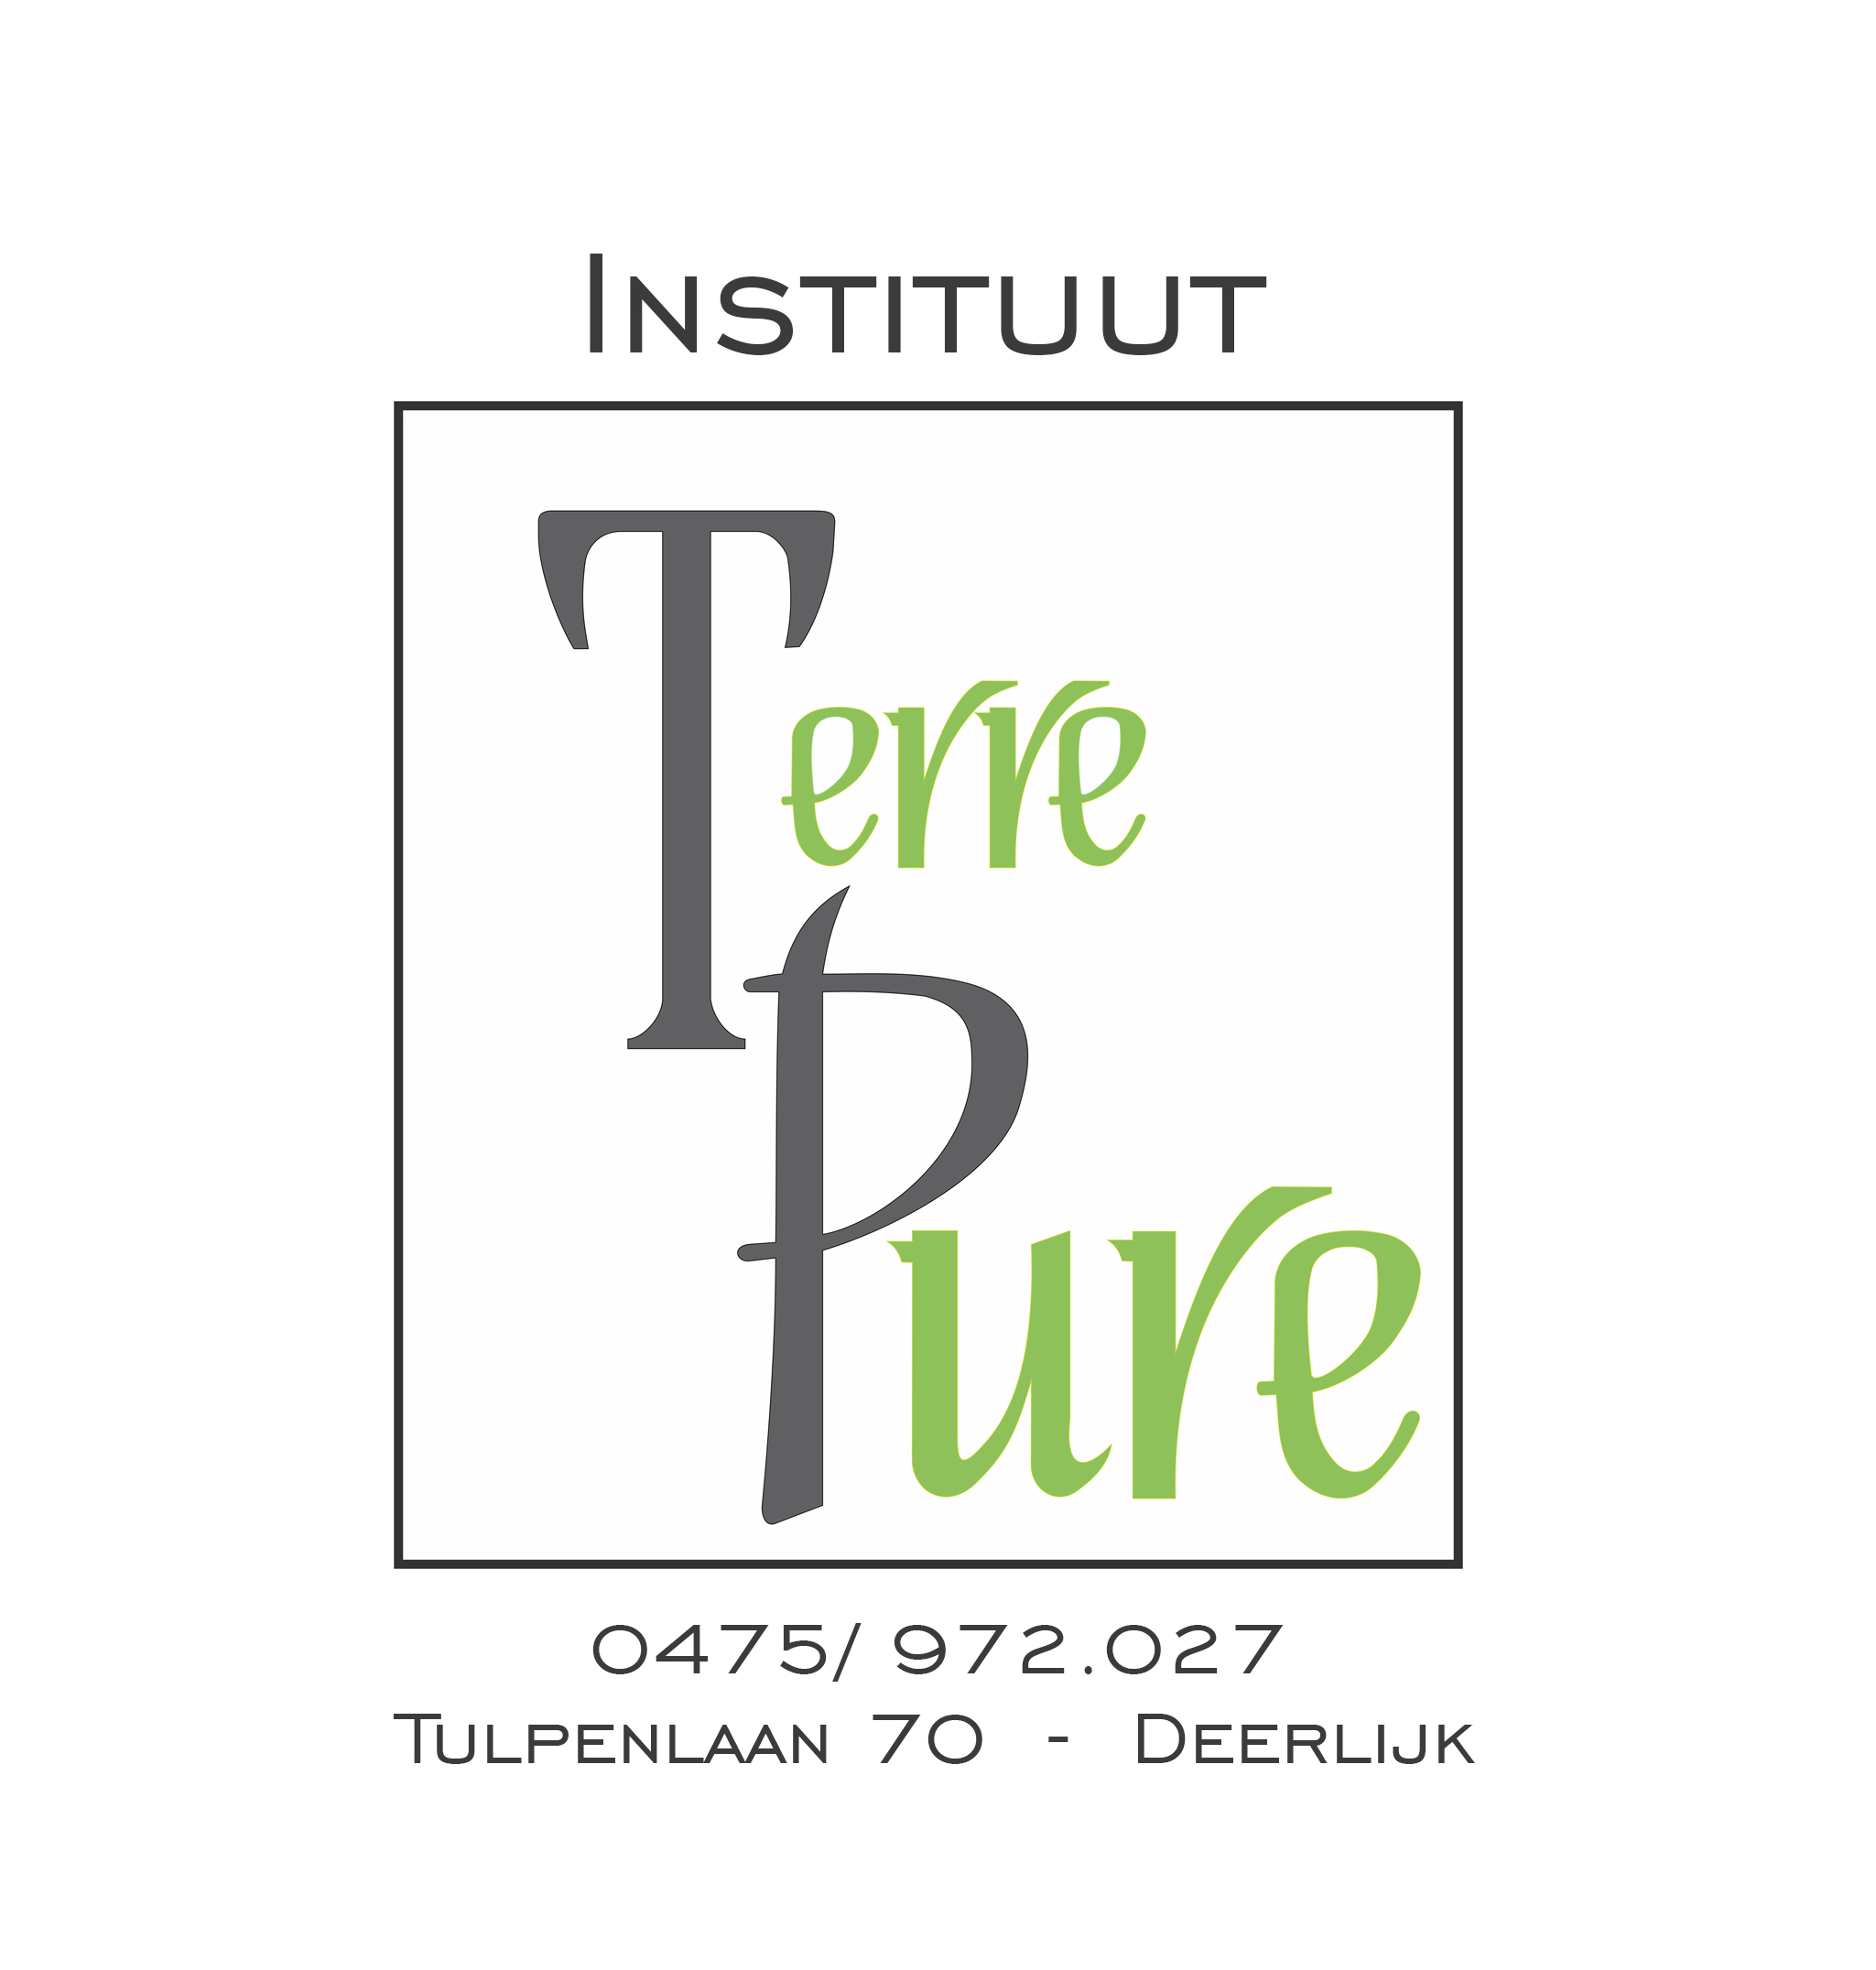 pedicuristen Antwerpen Instituut Terre Pure